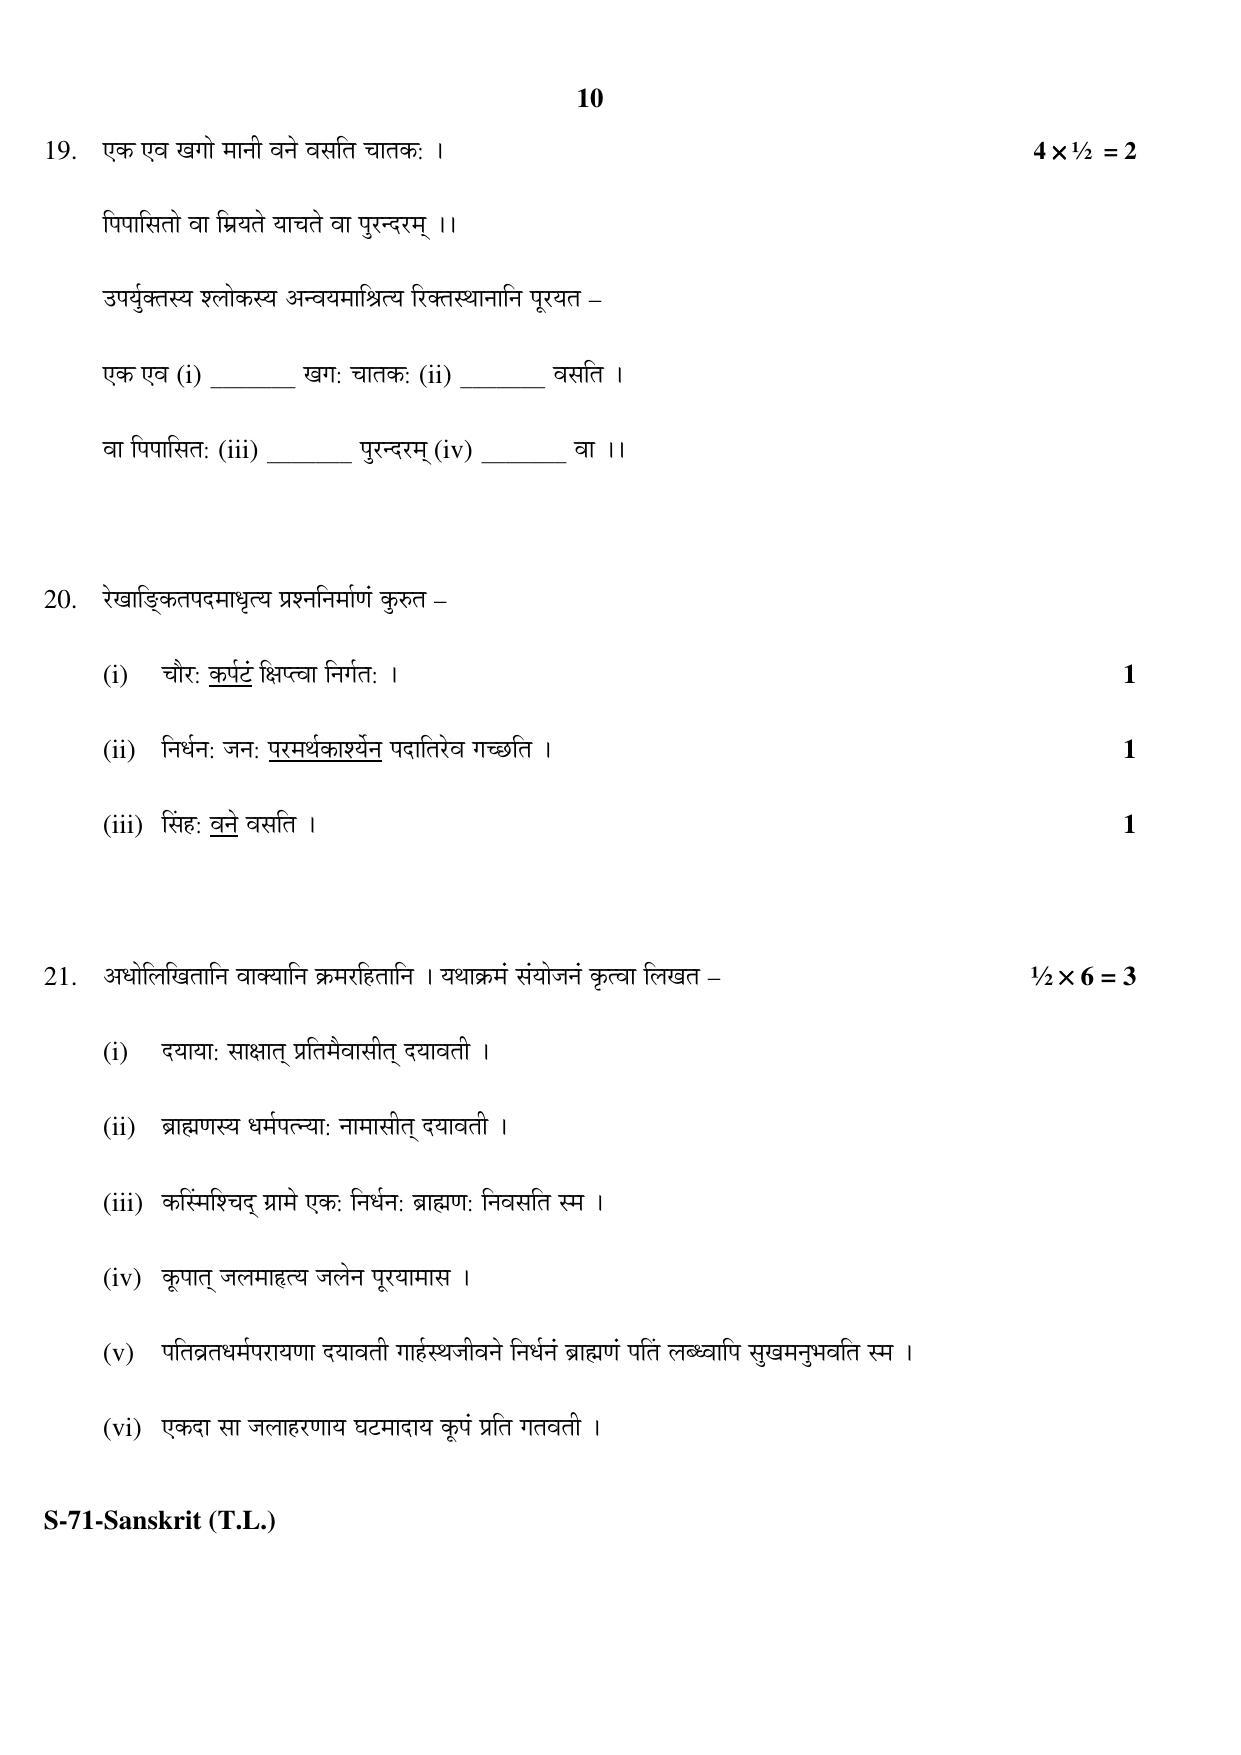 RBSE Class 10 Sanskrit (T.L.) 2017 Question Paper - Page 10